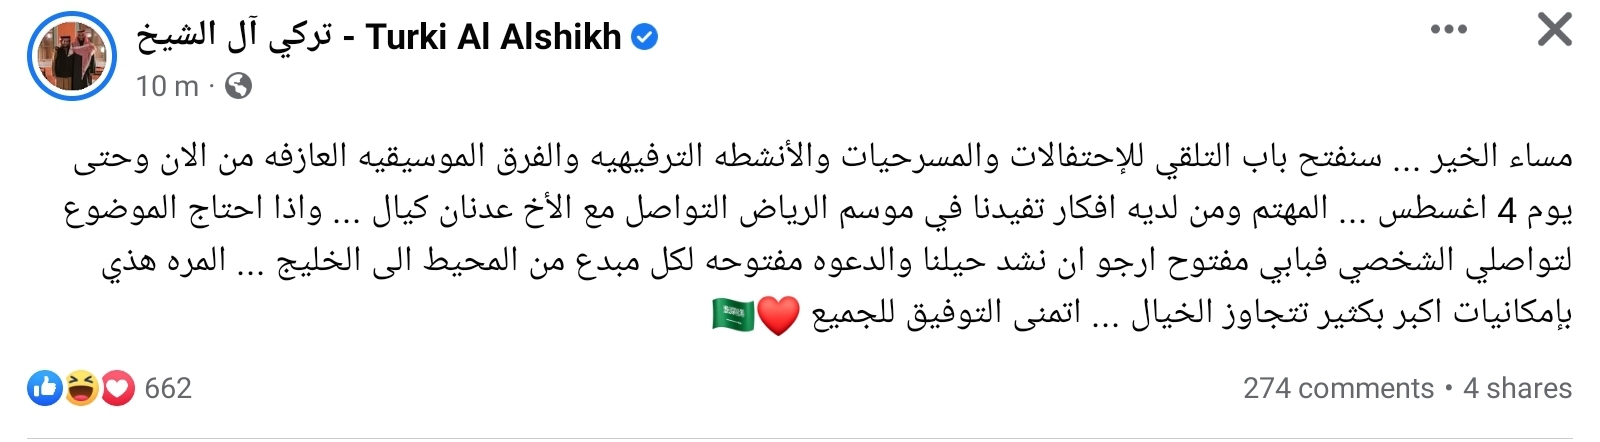 تركي الشيخ يفتح باب التقدم للاحتفالات والمسرحيات في موسم الرياض 1